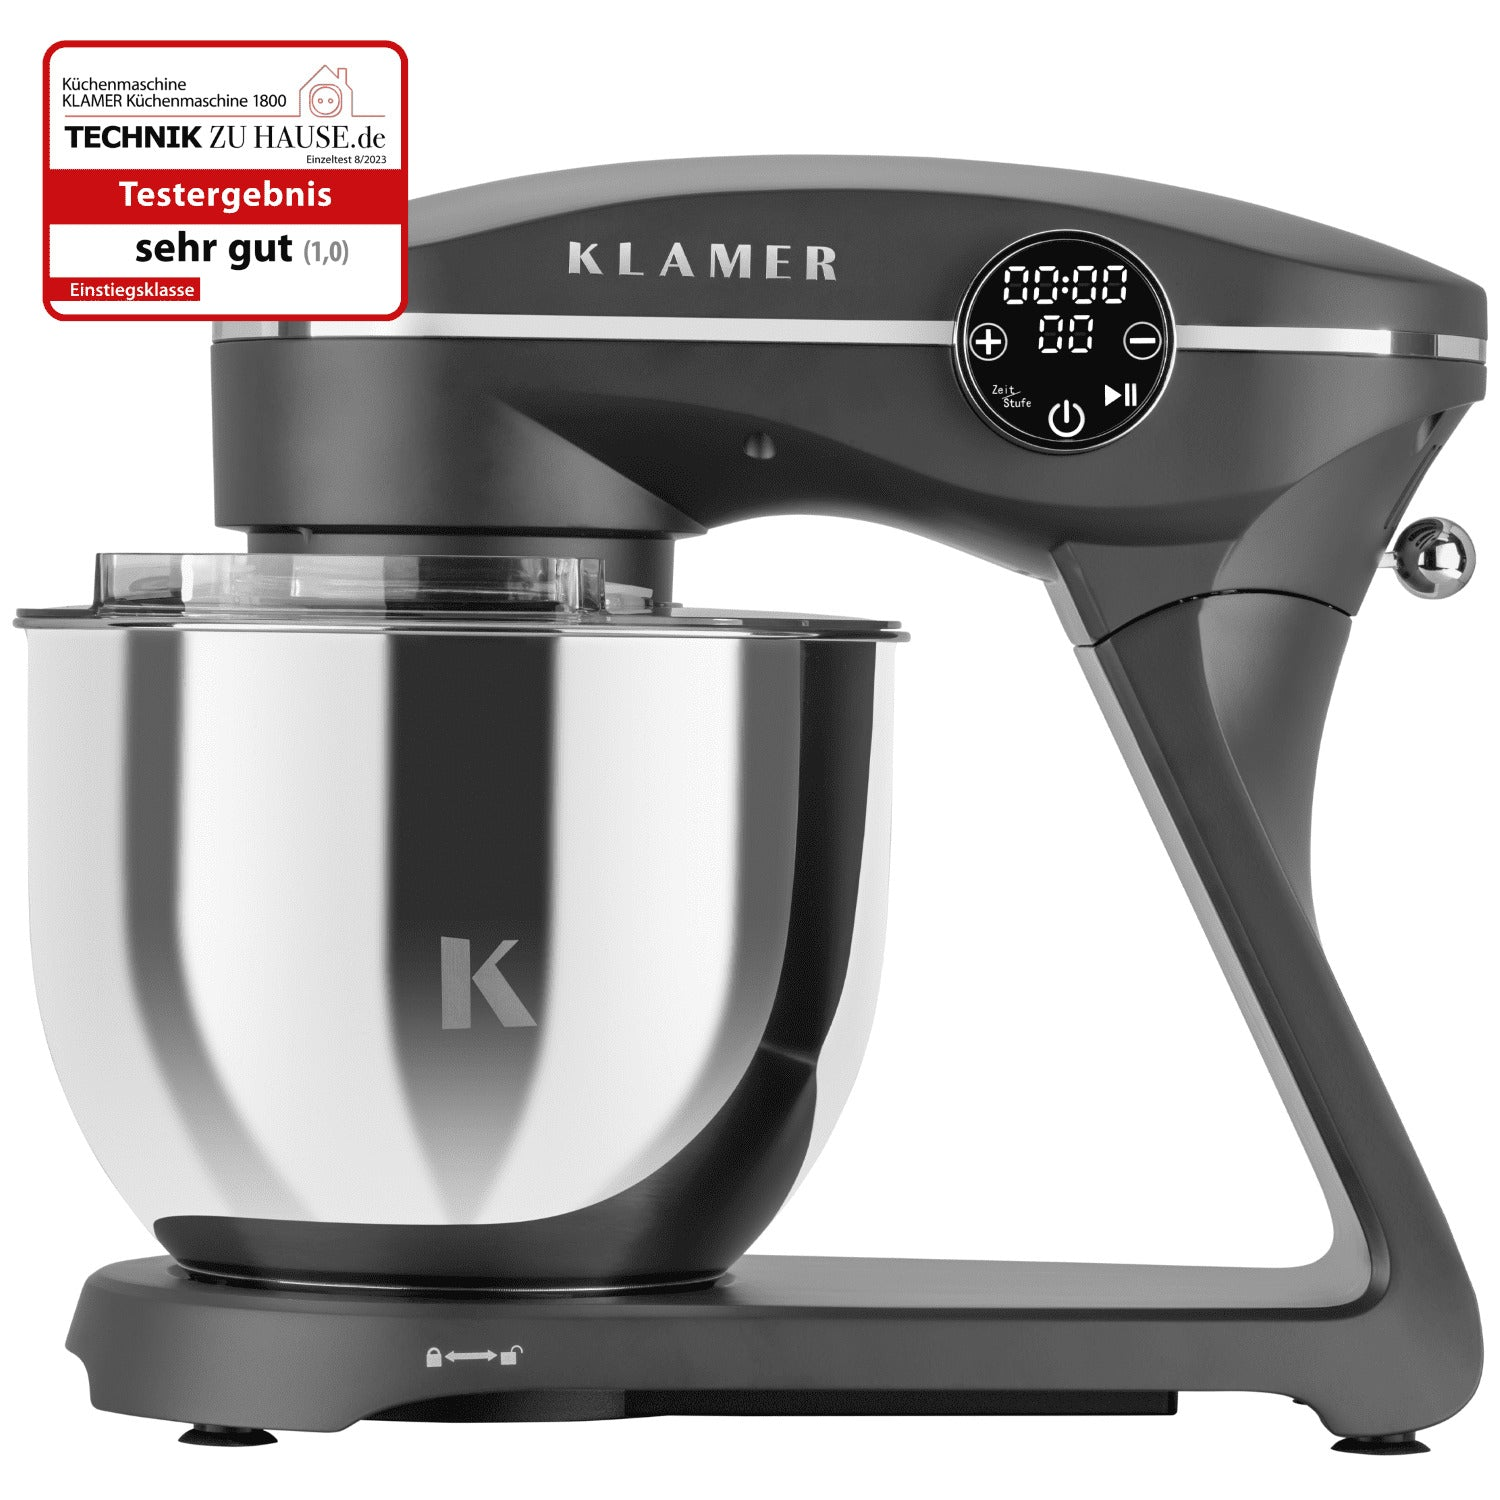 KLAMER (1800 Grau Küchenmaschine - Grau Küchenmaschine Watt)